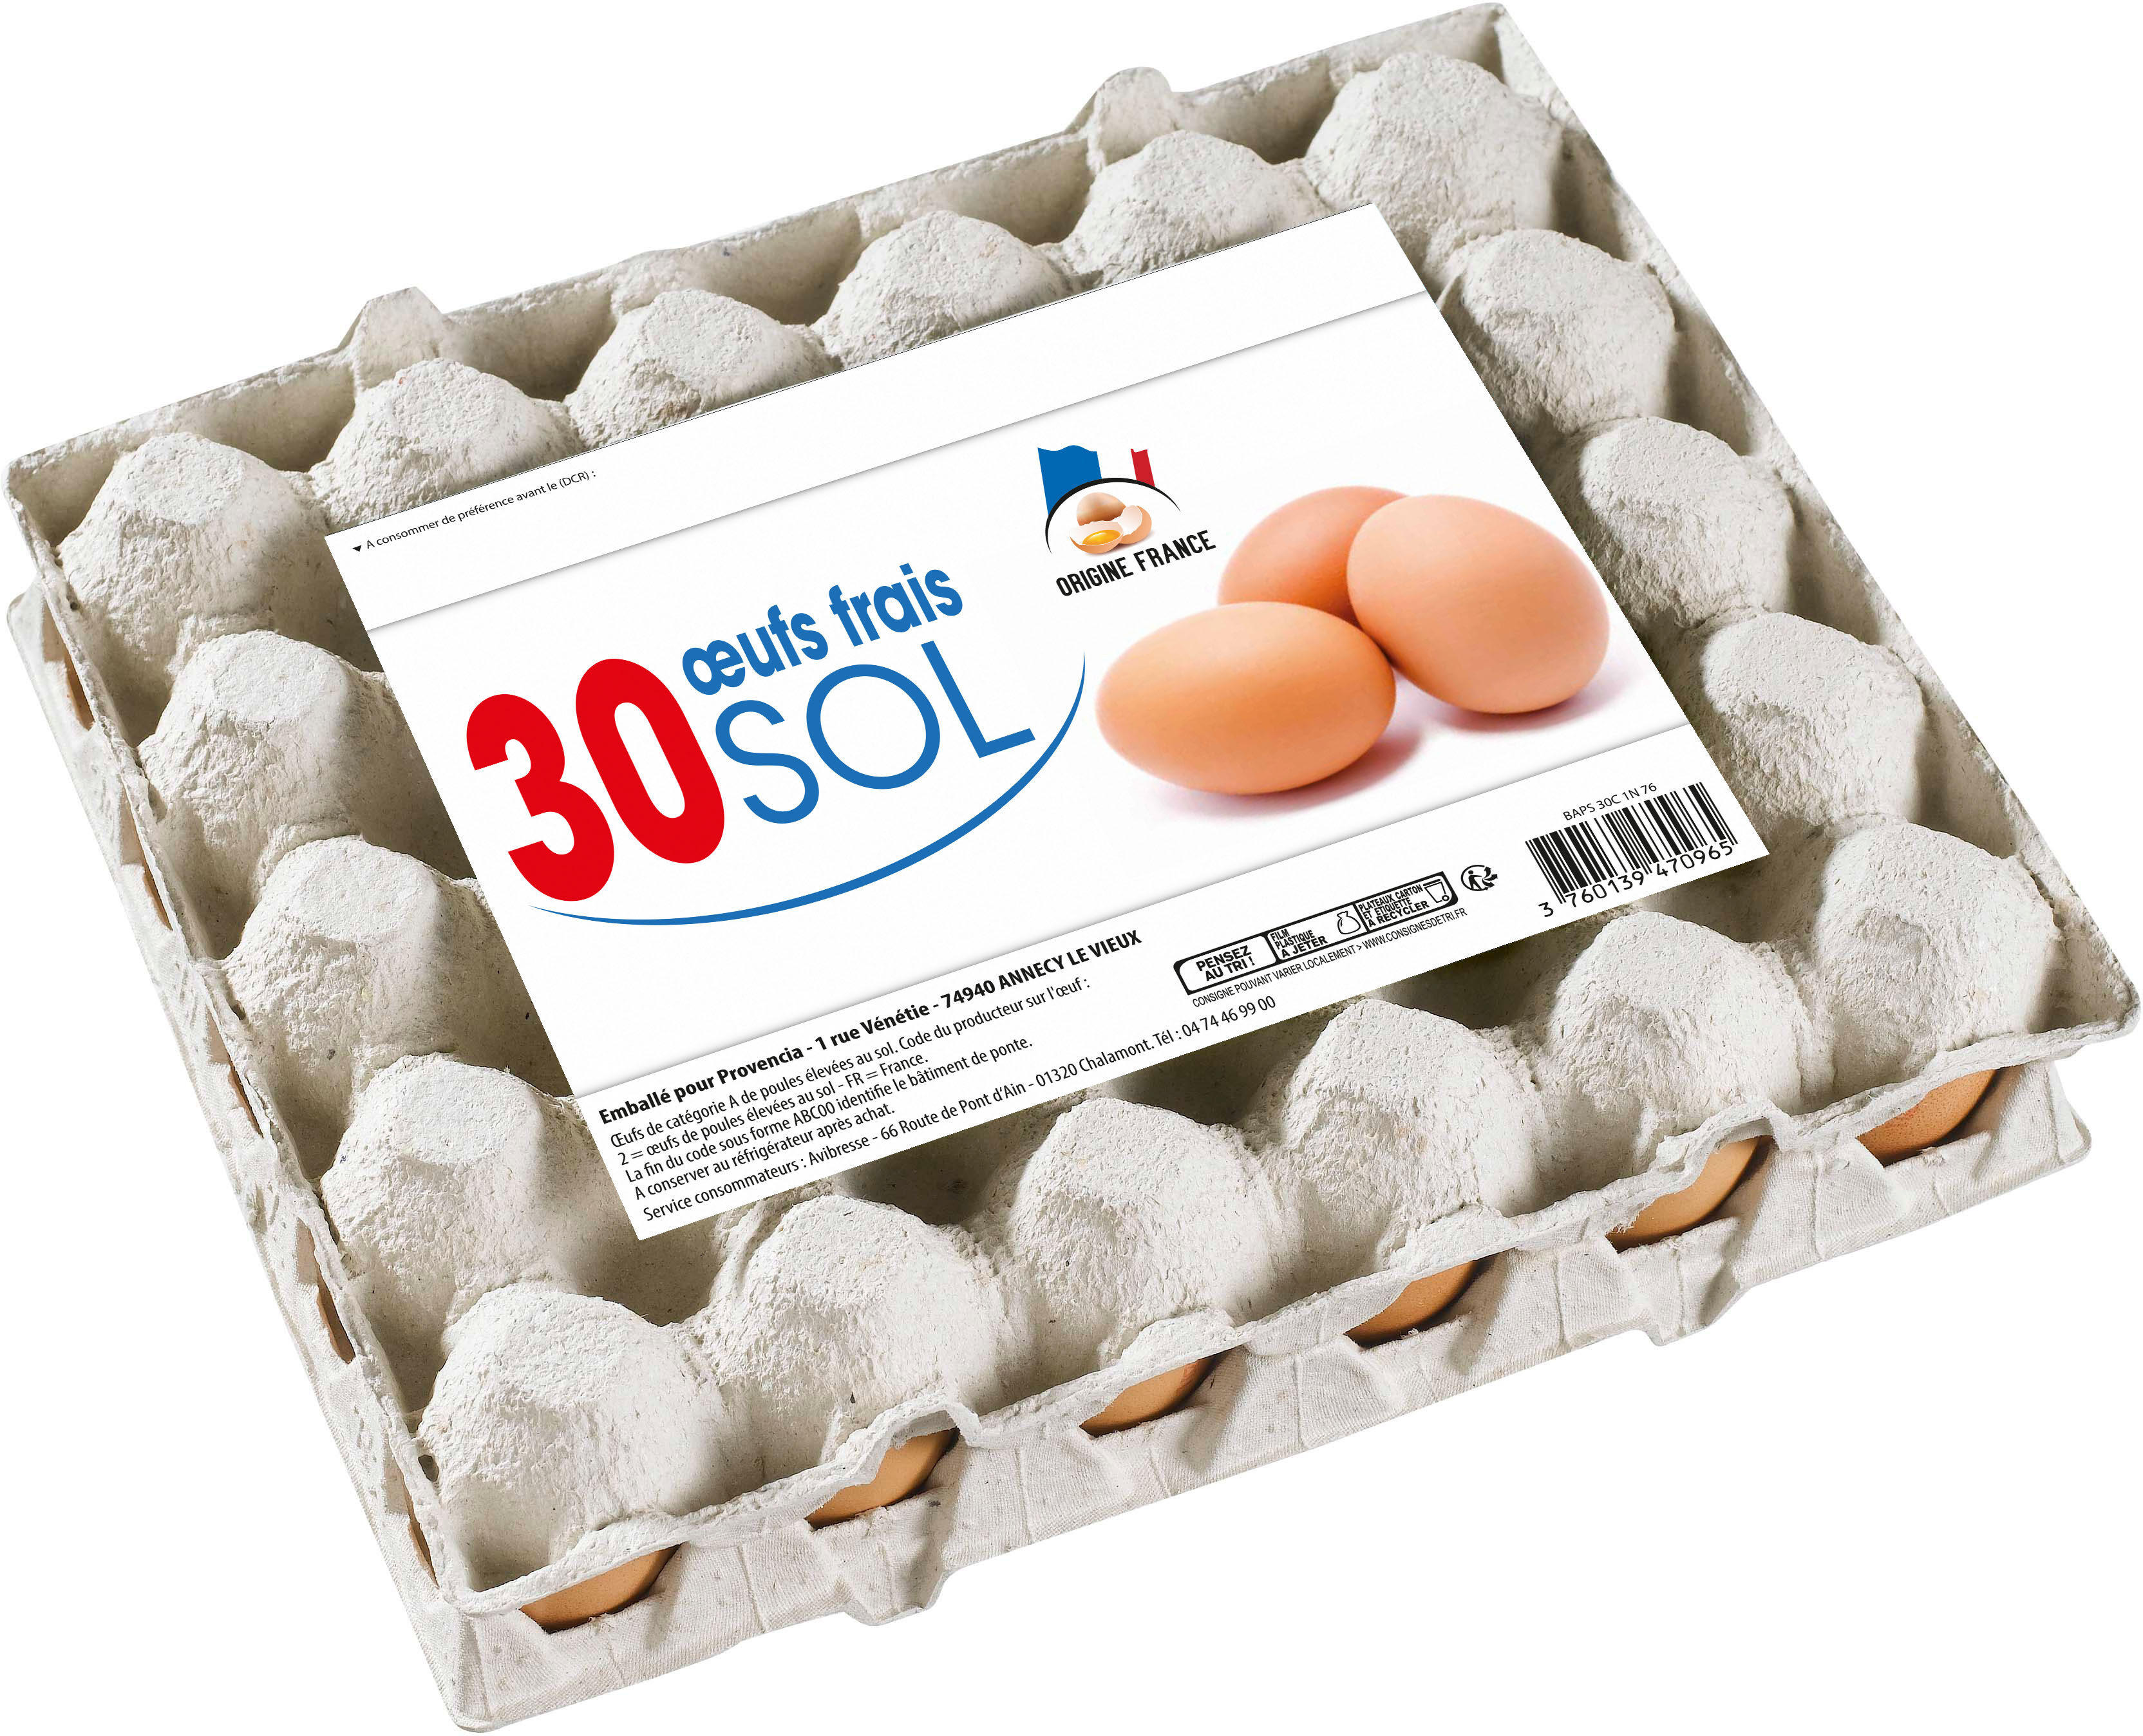 10 œuf frais sol - Producto - fr